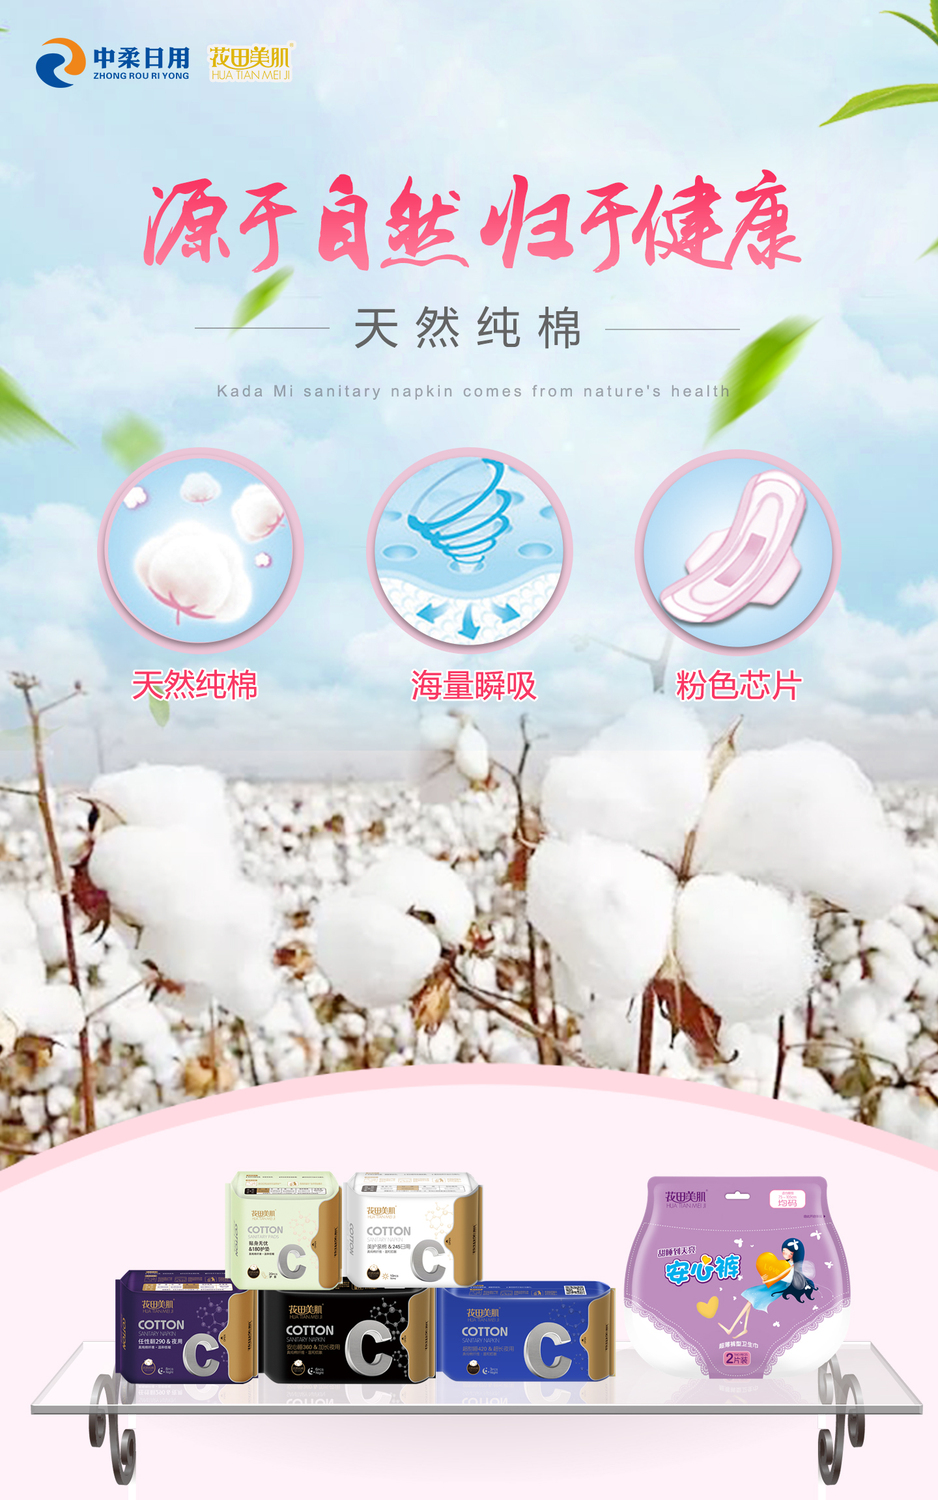 花田美肌420卫生巾产品优势海报1-2.jpg